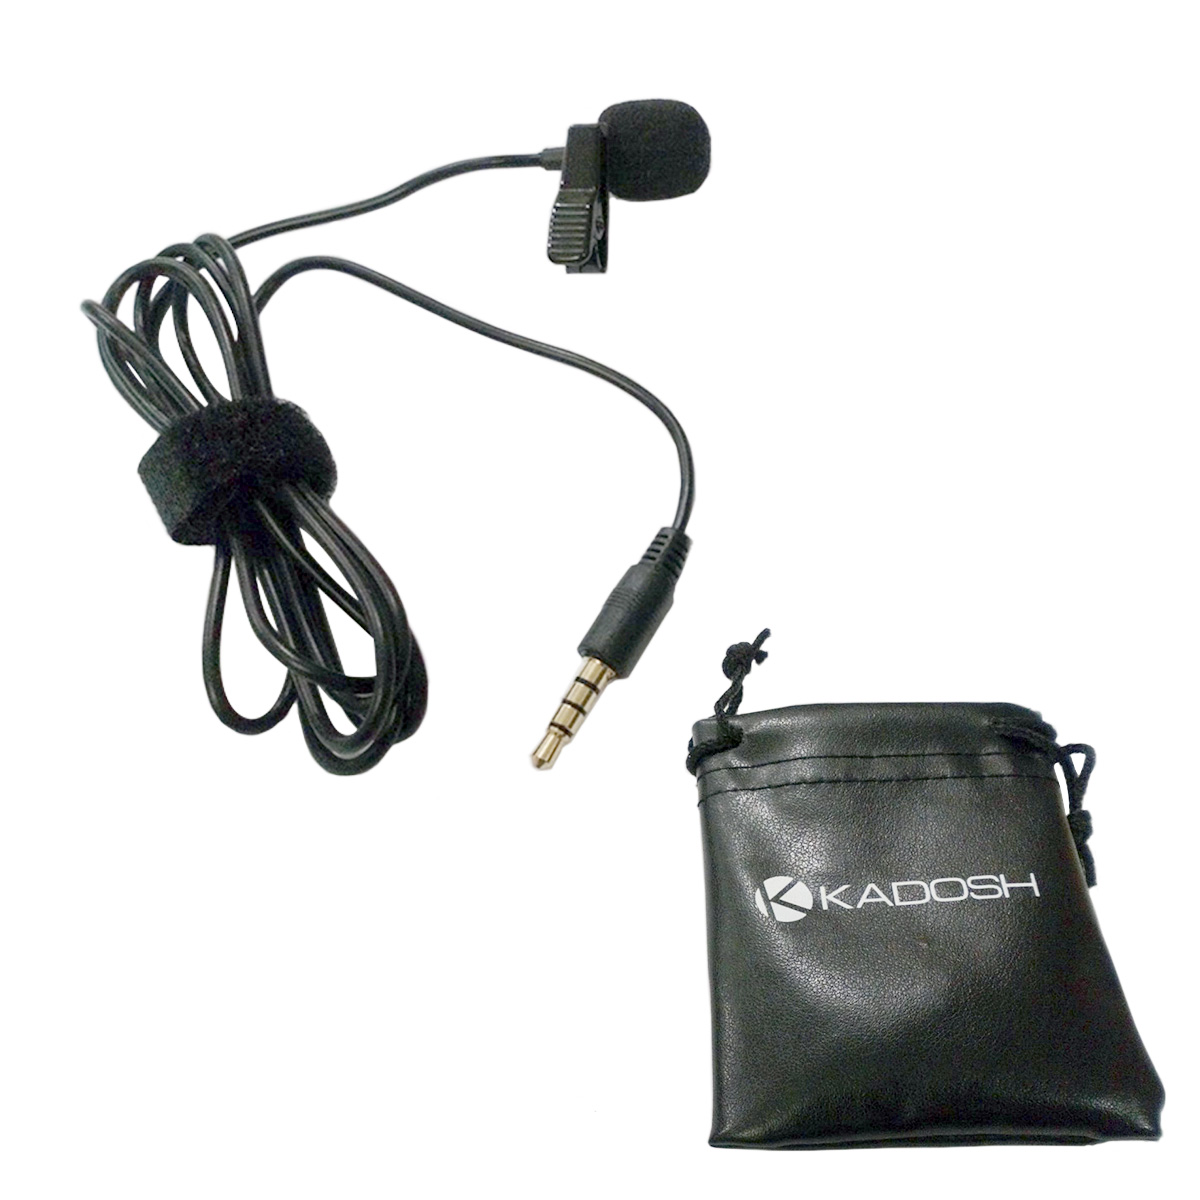 Microfone de lapela para Smartphone KADOSH - KL1